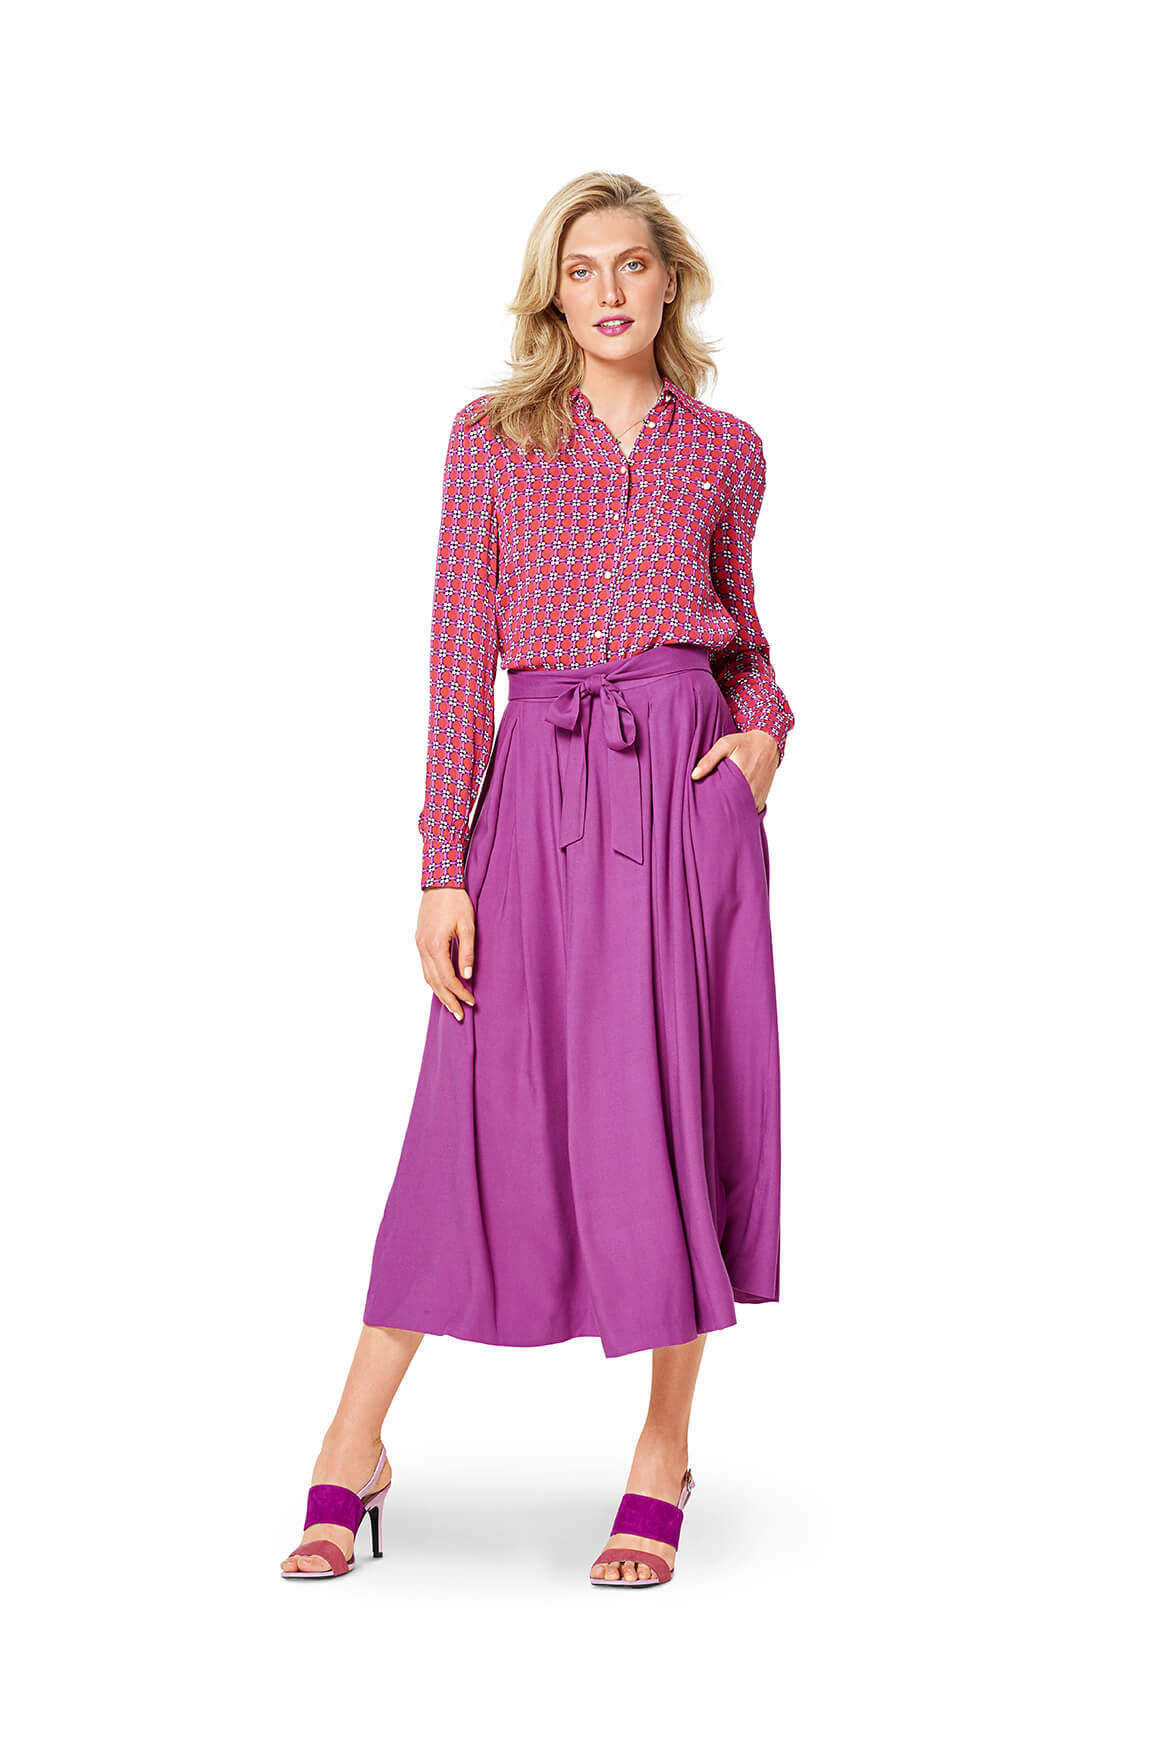 Burda Style Pattern 6341 Misses' inverted pleat skirt